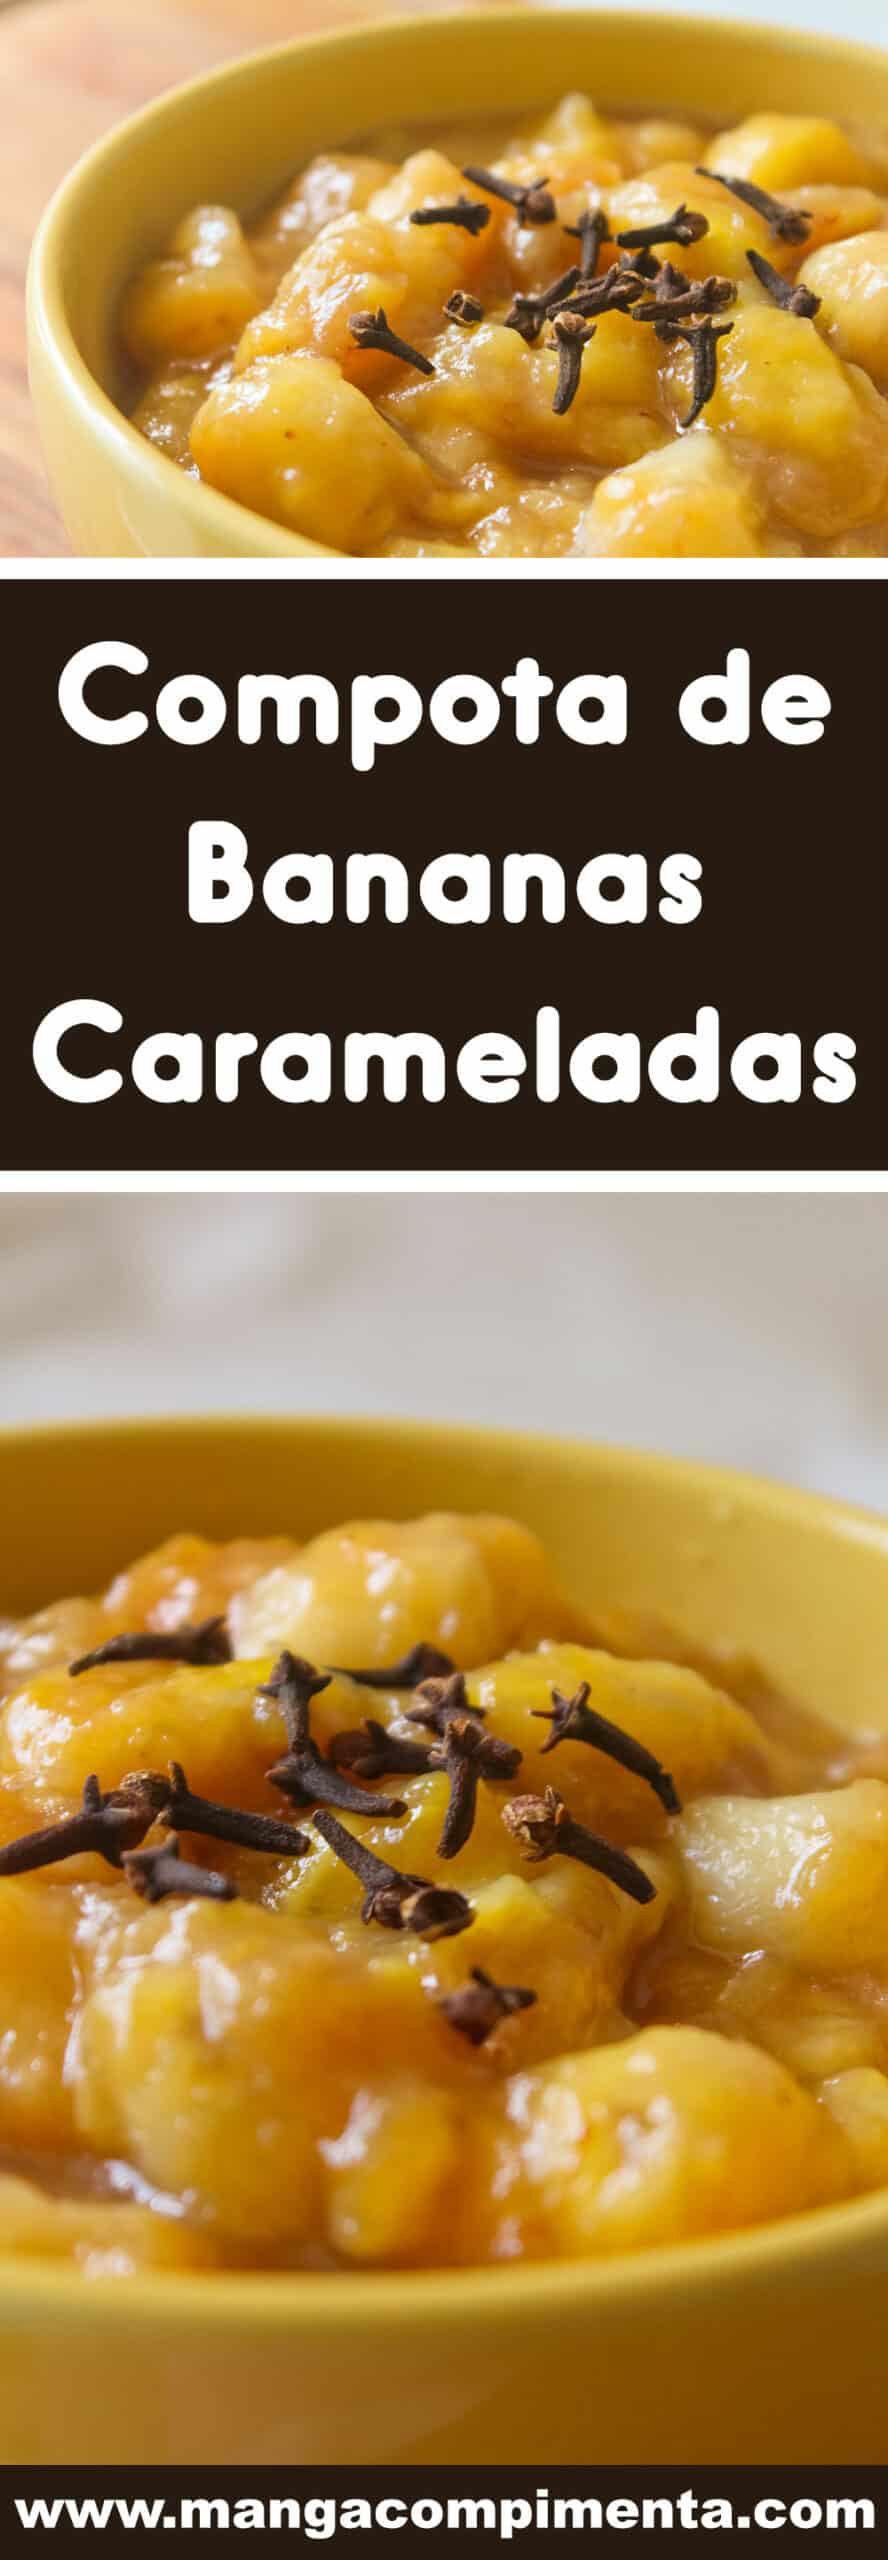 Receita de Compota de Bananas Carameladas - prepare em casa e sirva com sorvete ou coma de colherada!